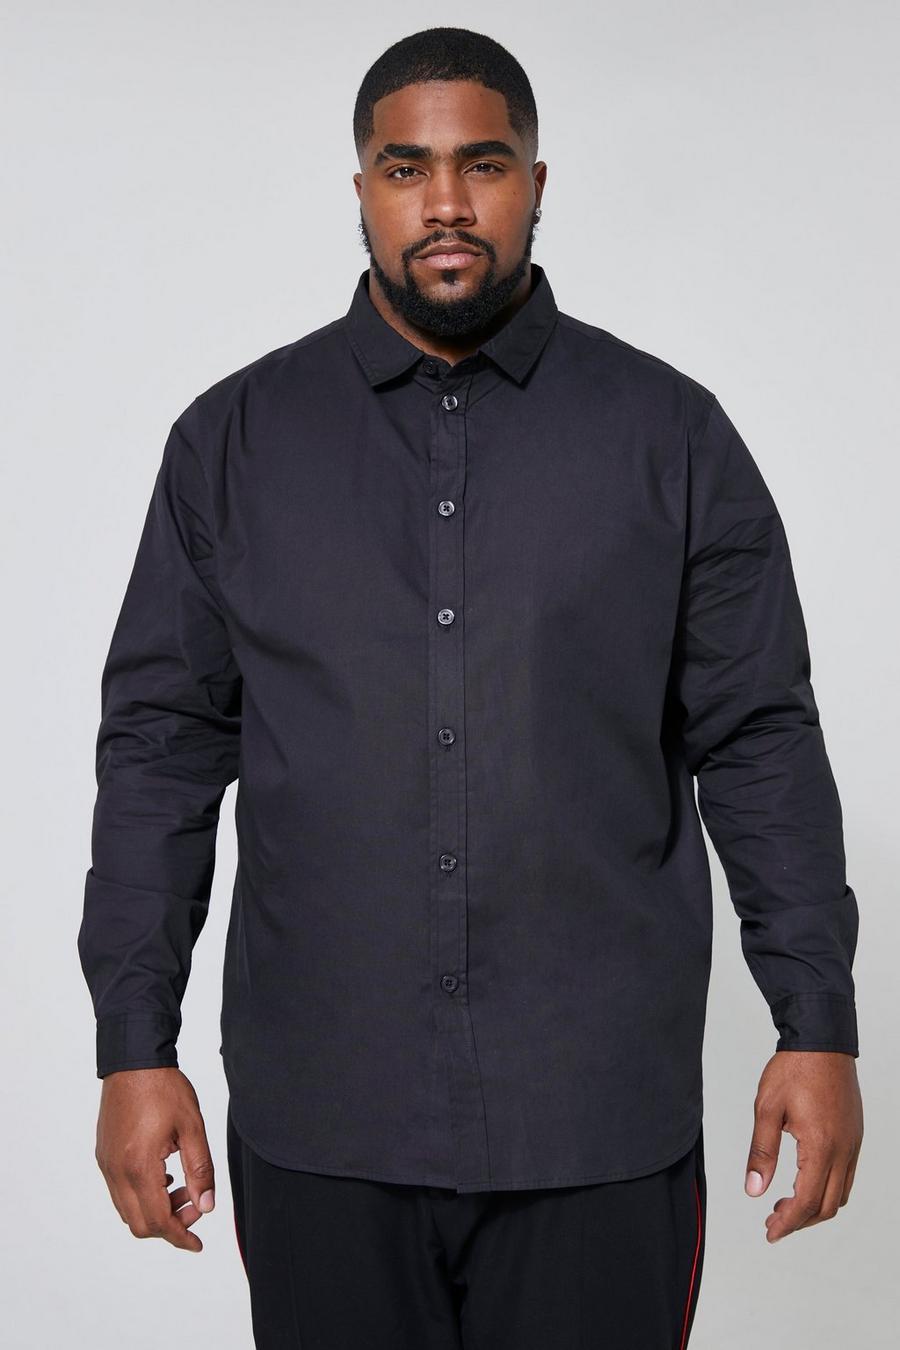 שחור חולצת פופלין עם שרוולים ארוכים וצווארון עם דשים קצרים, מידות גדולות